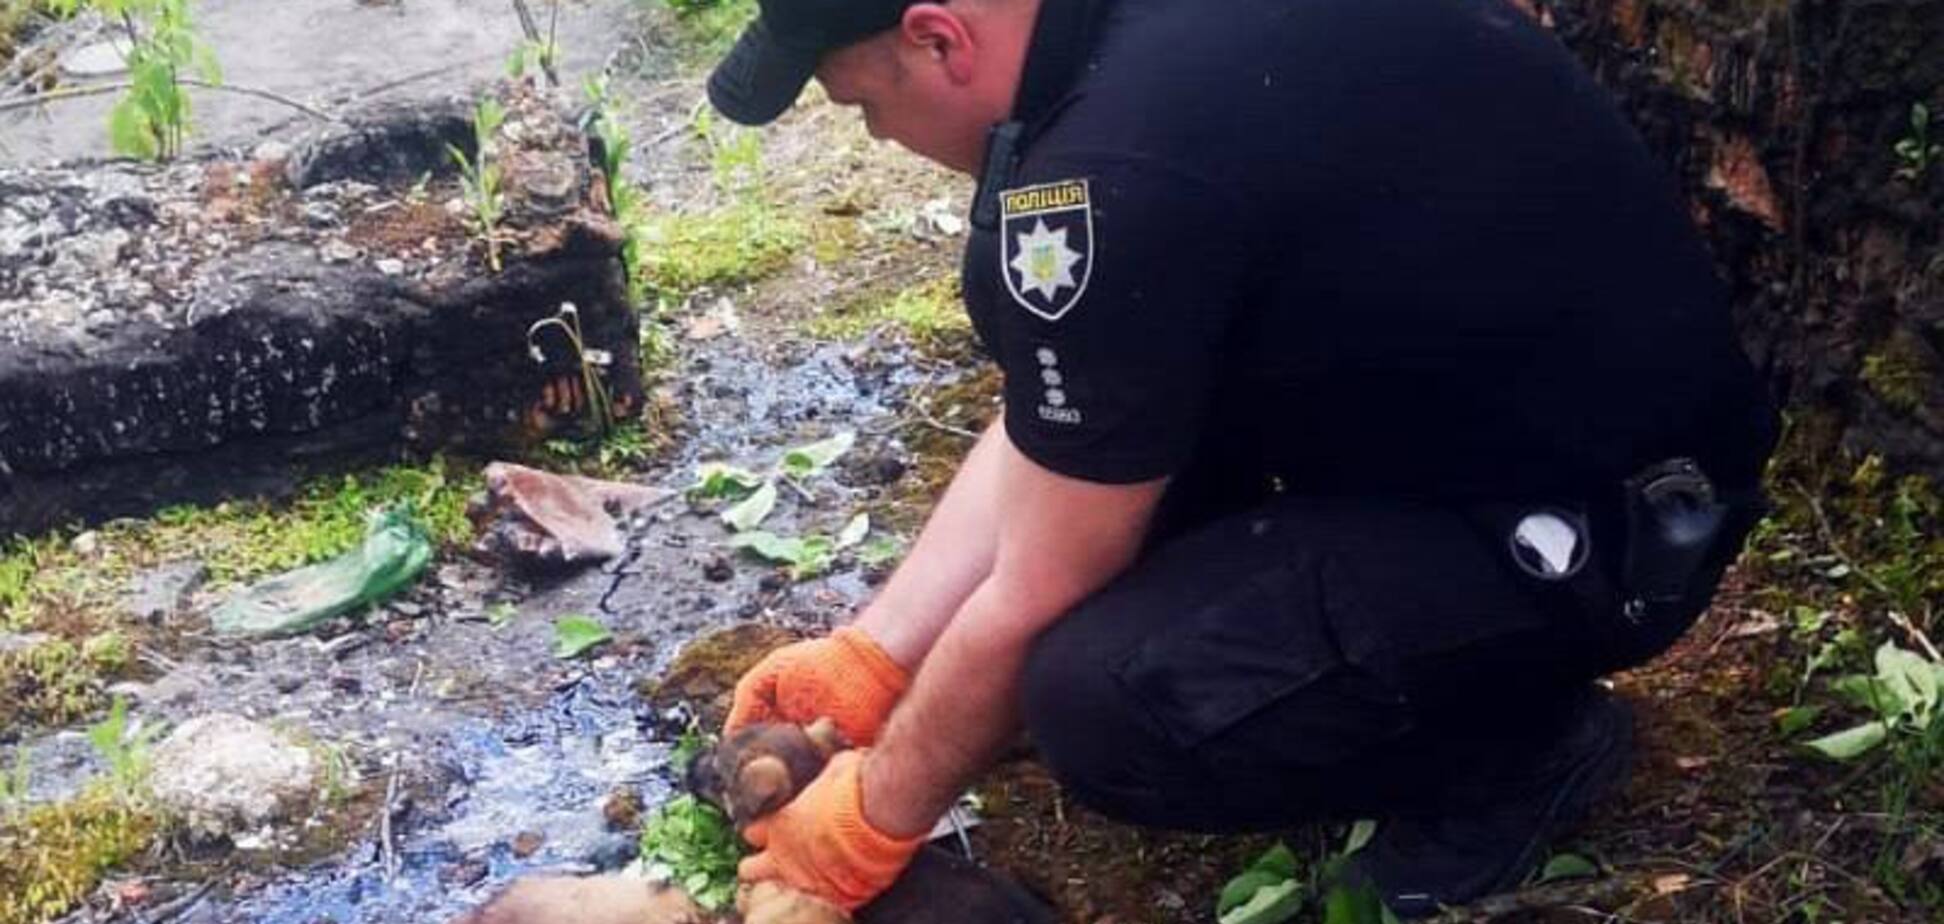 Украинский полицейский спас щенков из смертельной ловушки: фото героя